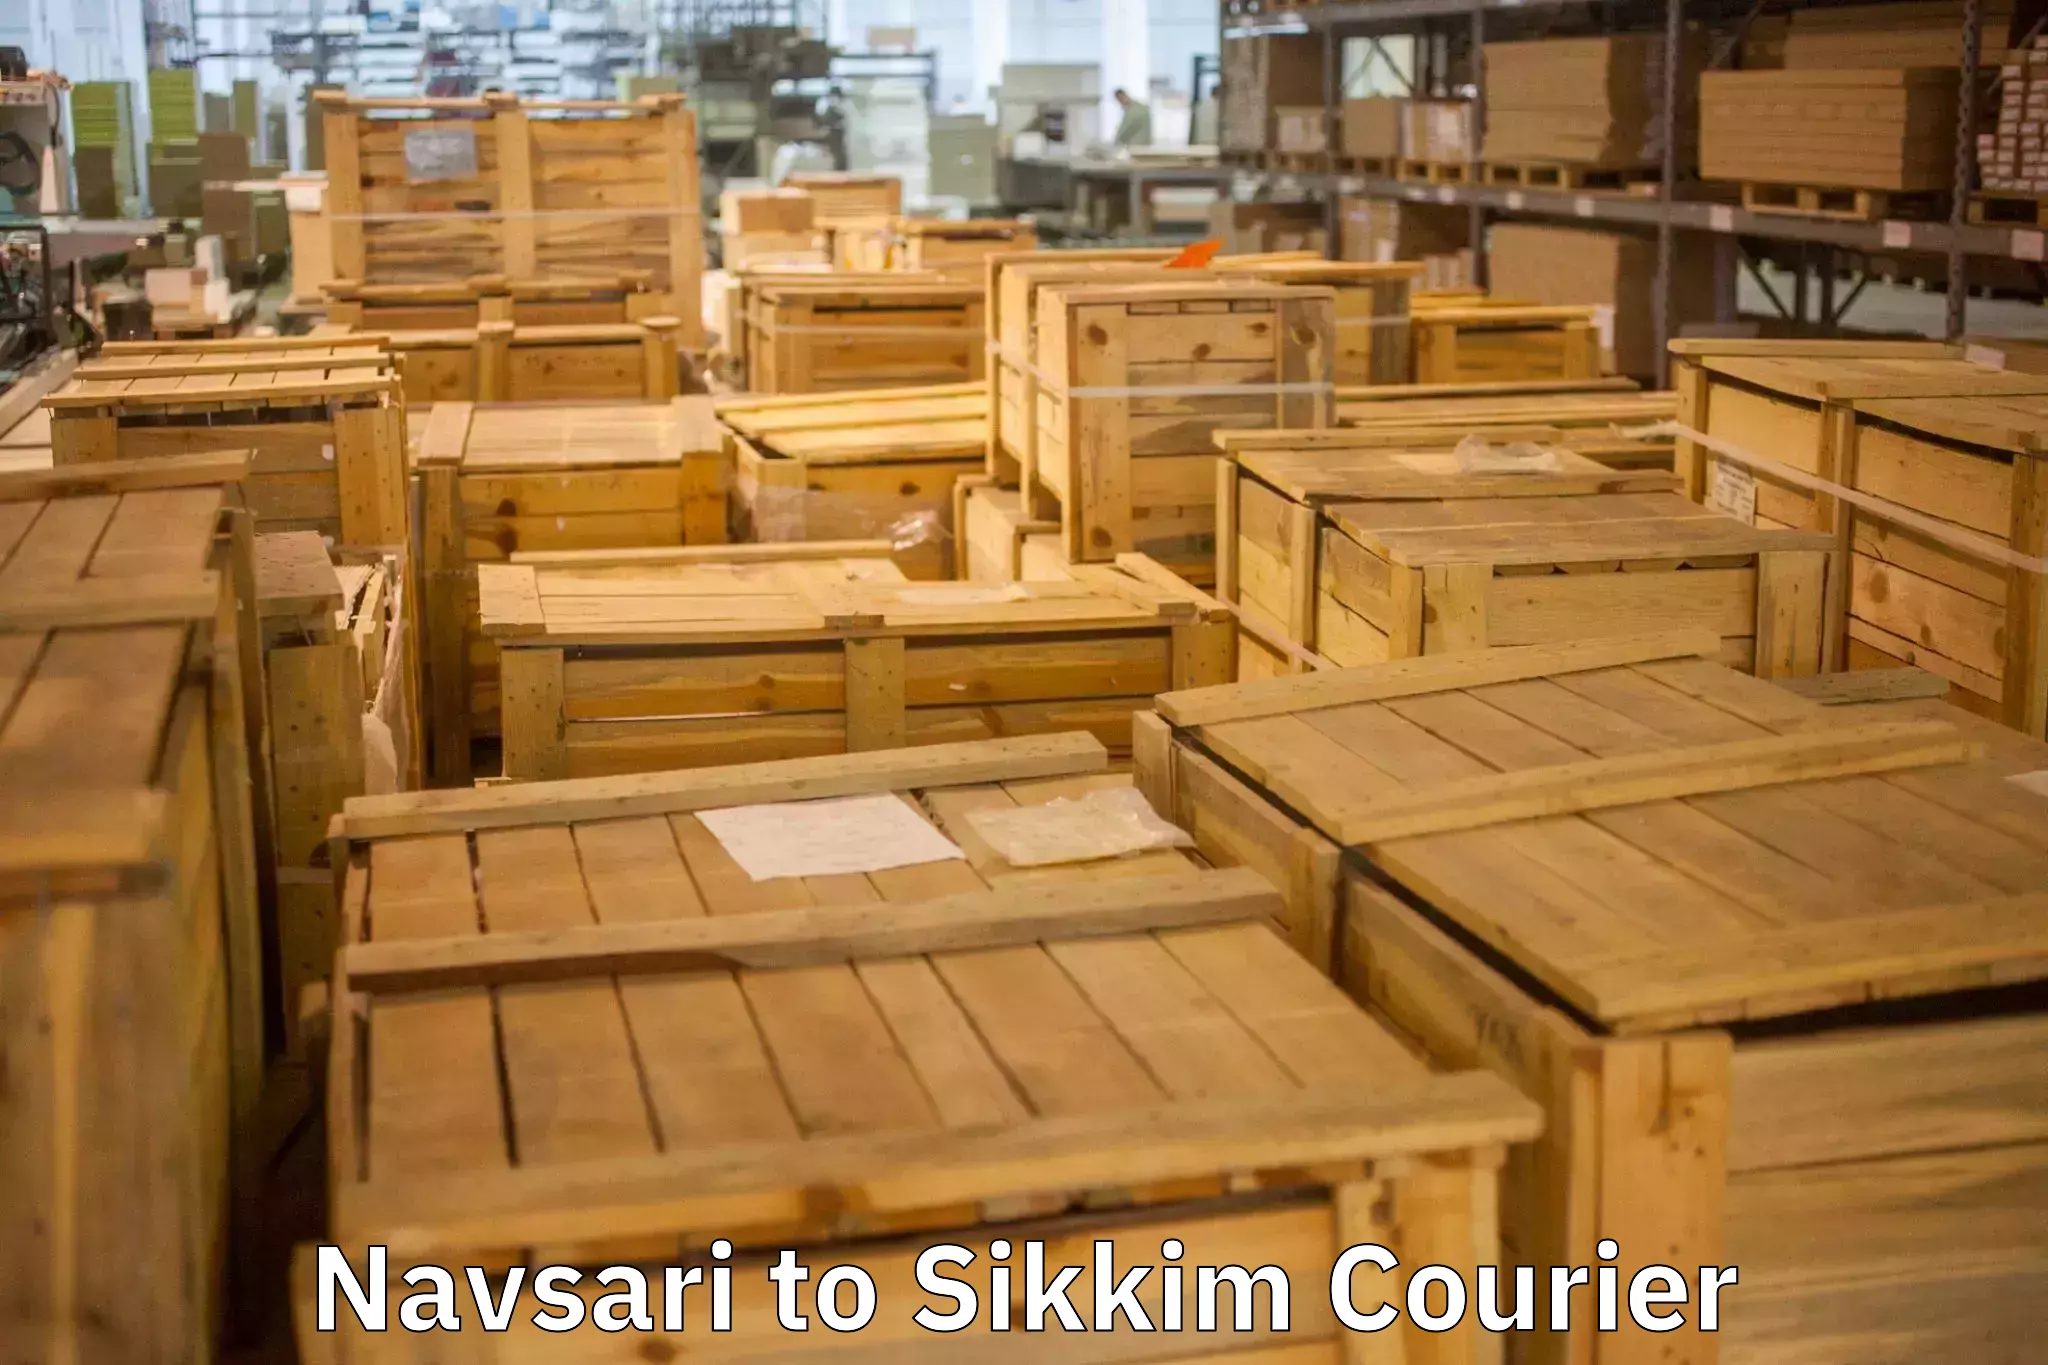 Furniture transport service Navsari to Geyzing